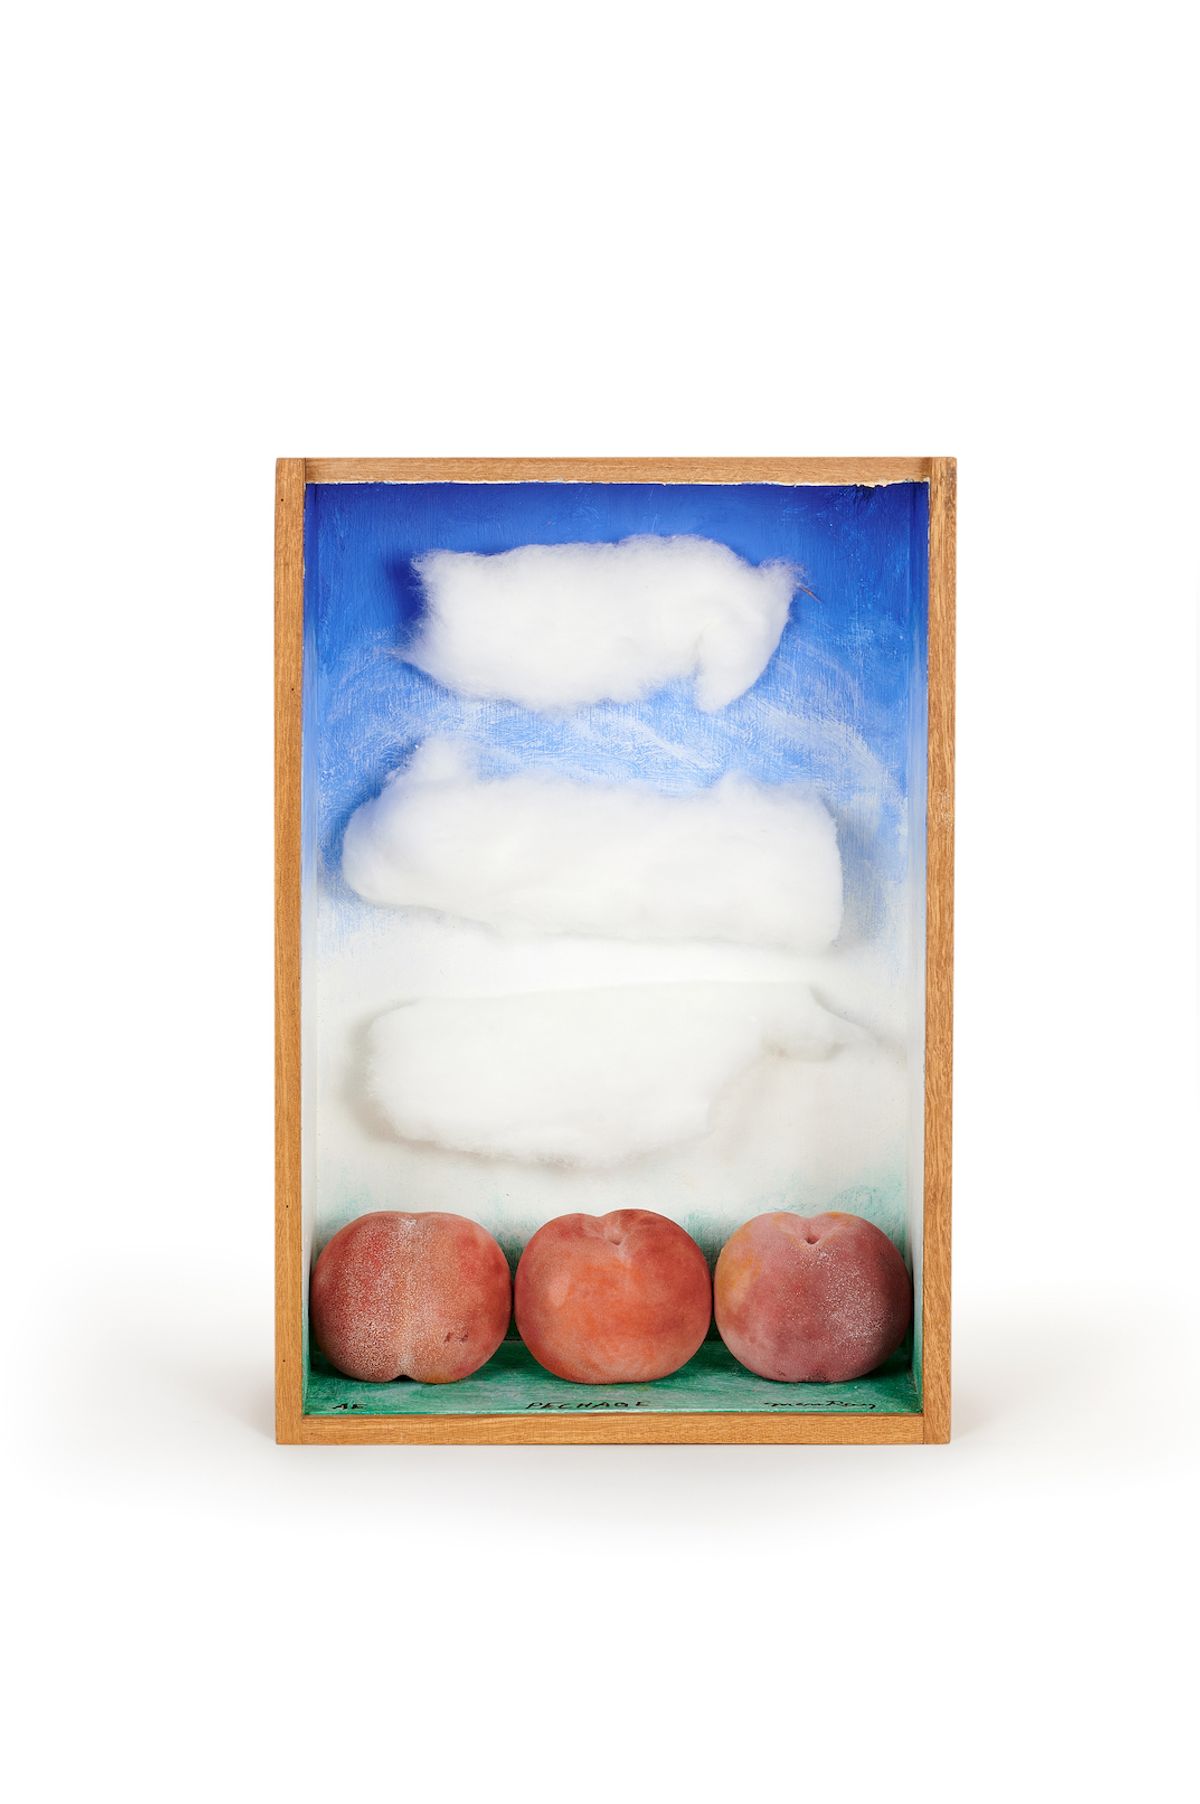 Man Ray, Pêchage, 1969, boîte en bois peint, trois pêches artificielles, coton, est. 20 000-30 000 euros. © Joron-Derem